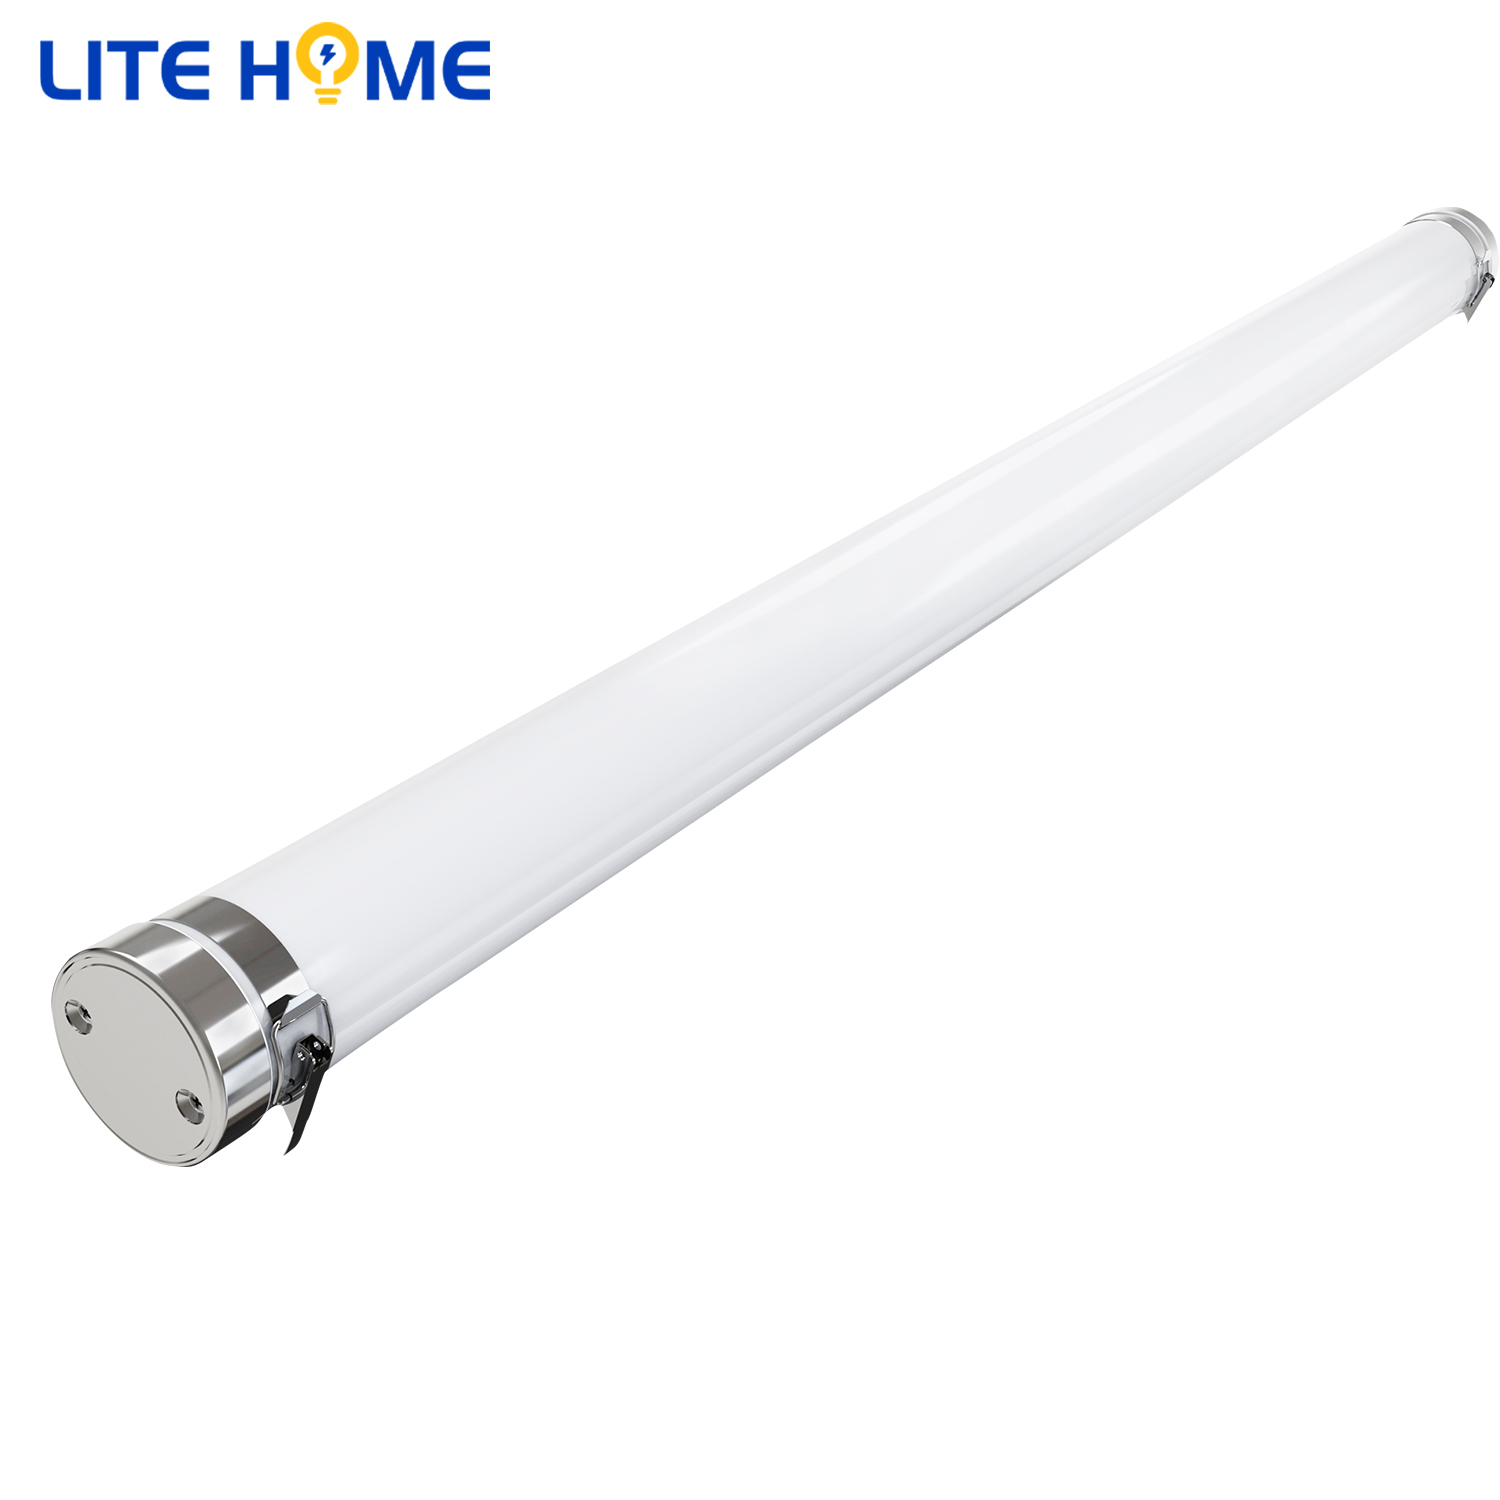 LiteHome SPEC - EU LED Tubular Tri-proof Light 